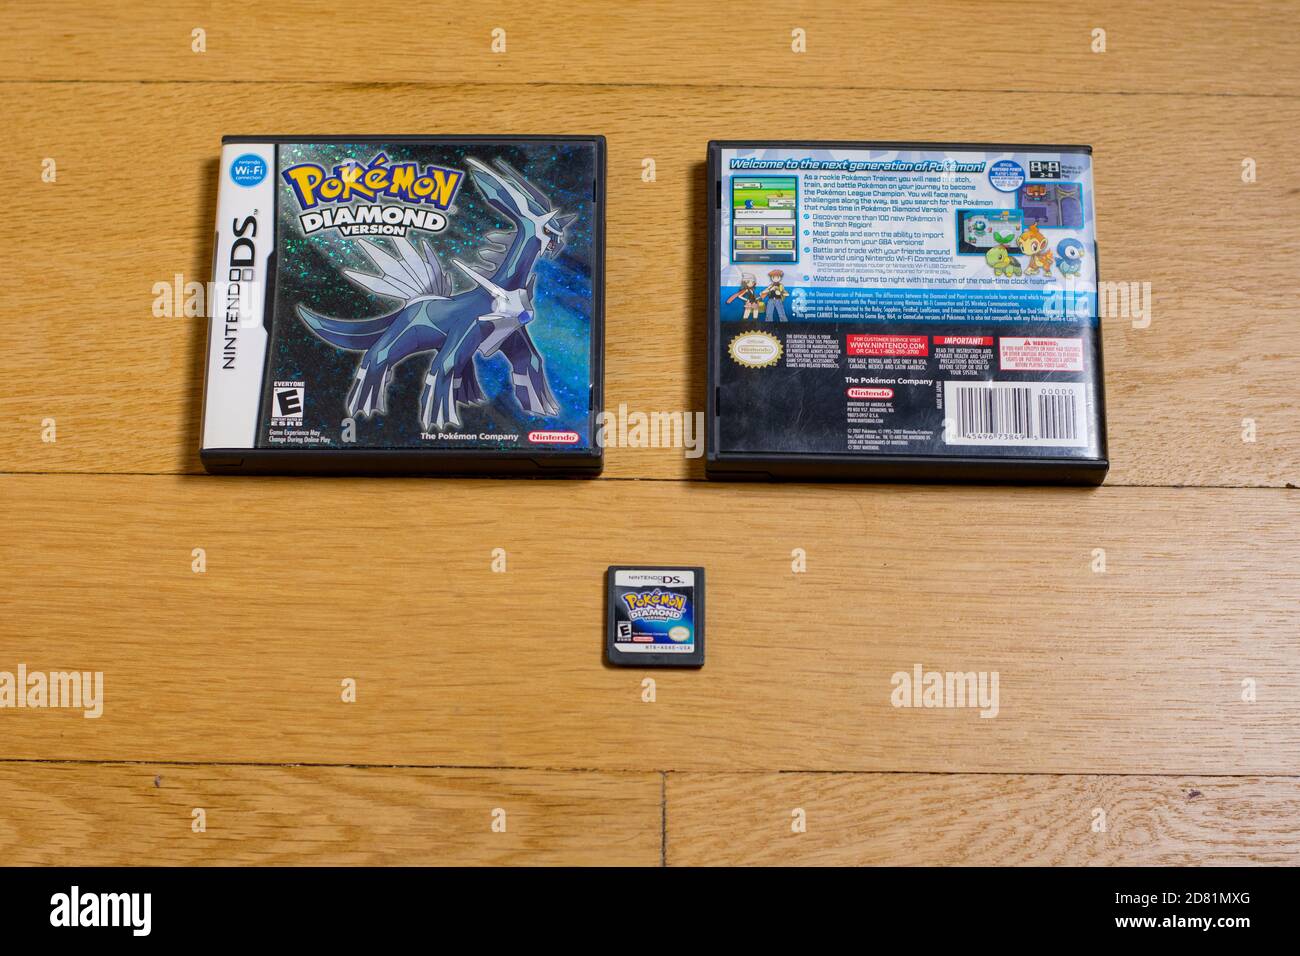 Eine Pokemon Diamond Cartridge und die Vorder- und Rückseite von IT's Game Case für den Nintendo DS auf einem Holzboden. Stockfoto